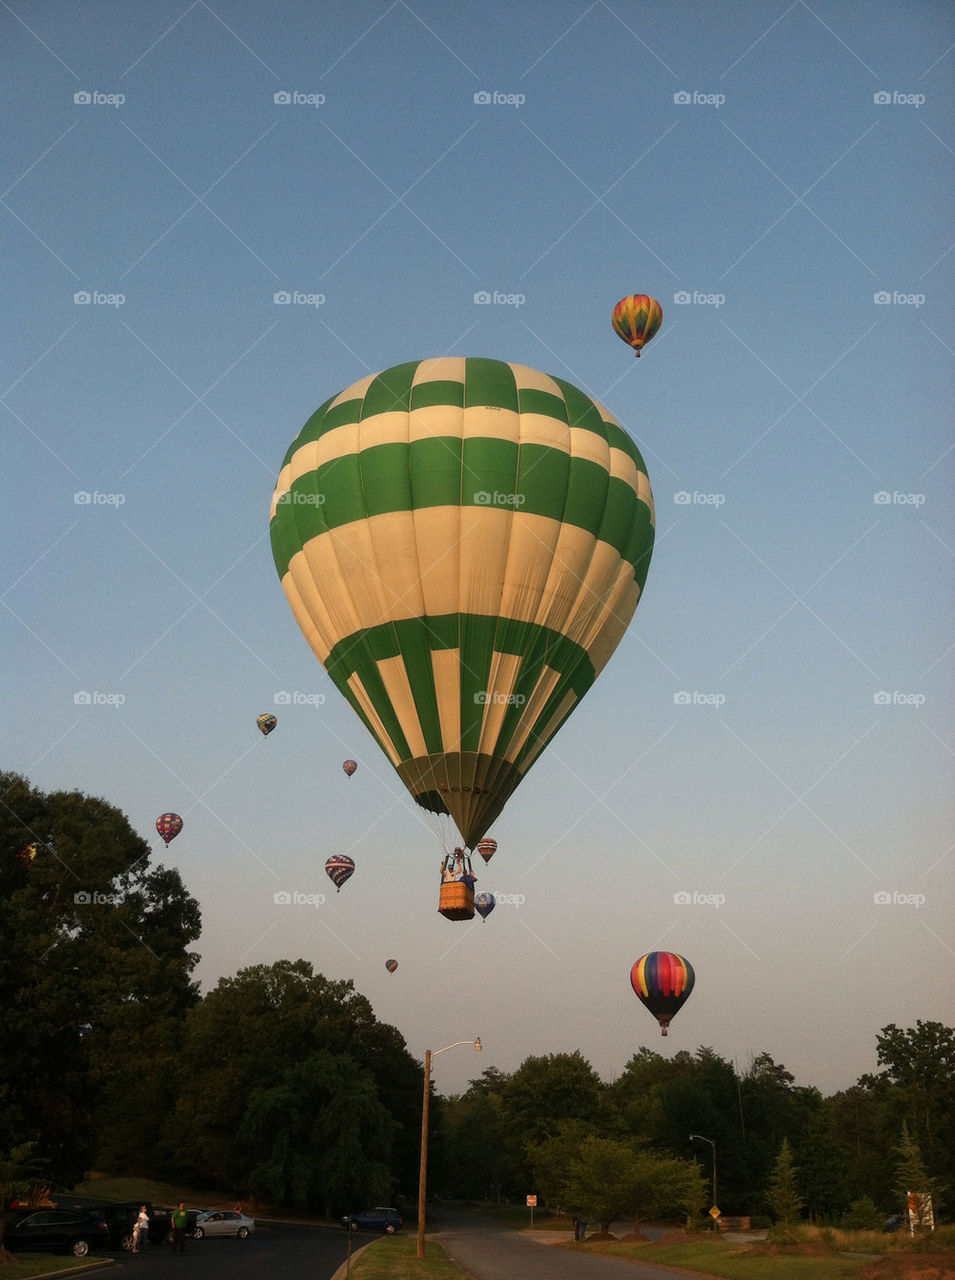 balloon hotairballoon greenballoon by tdkelly